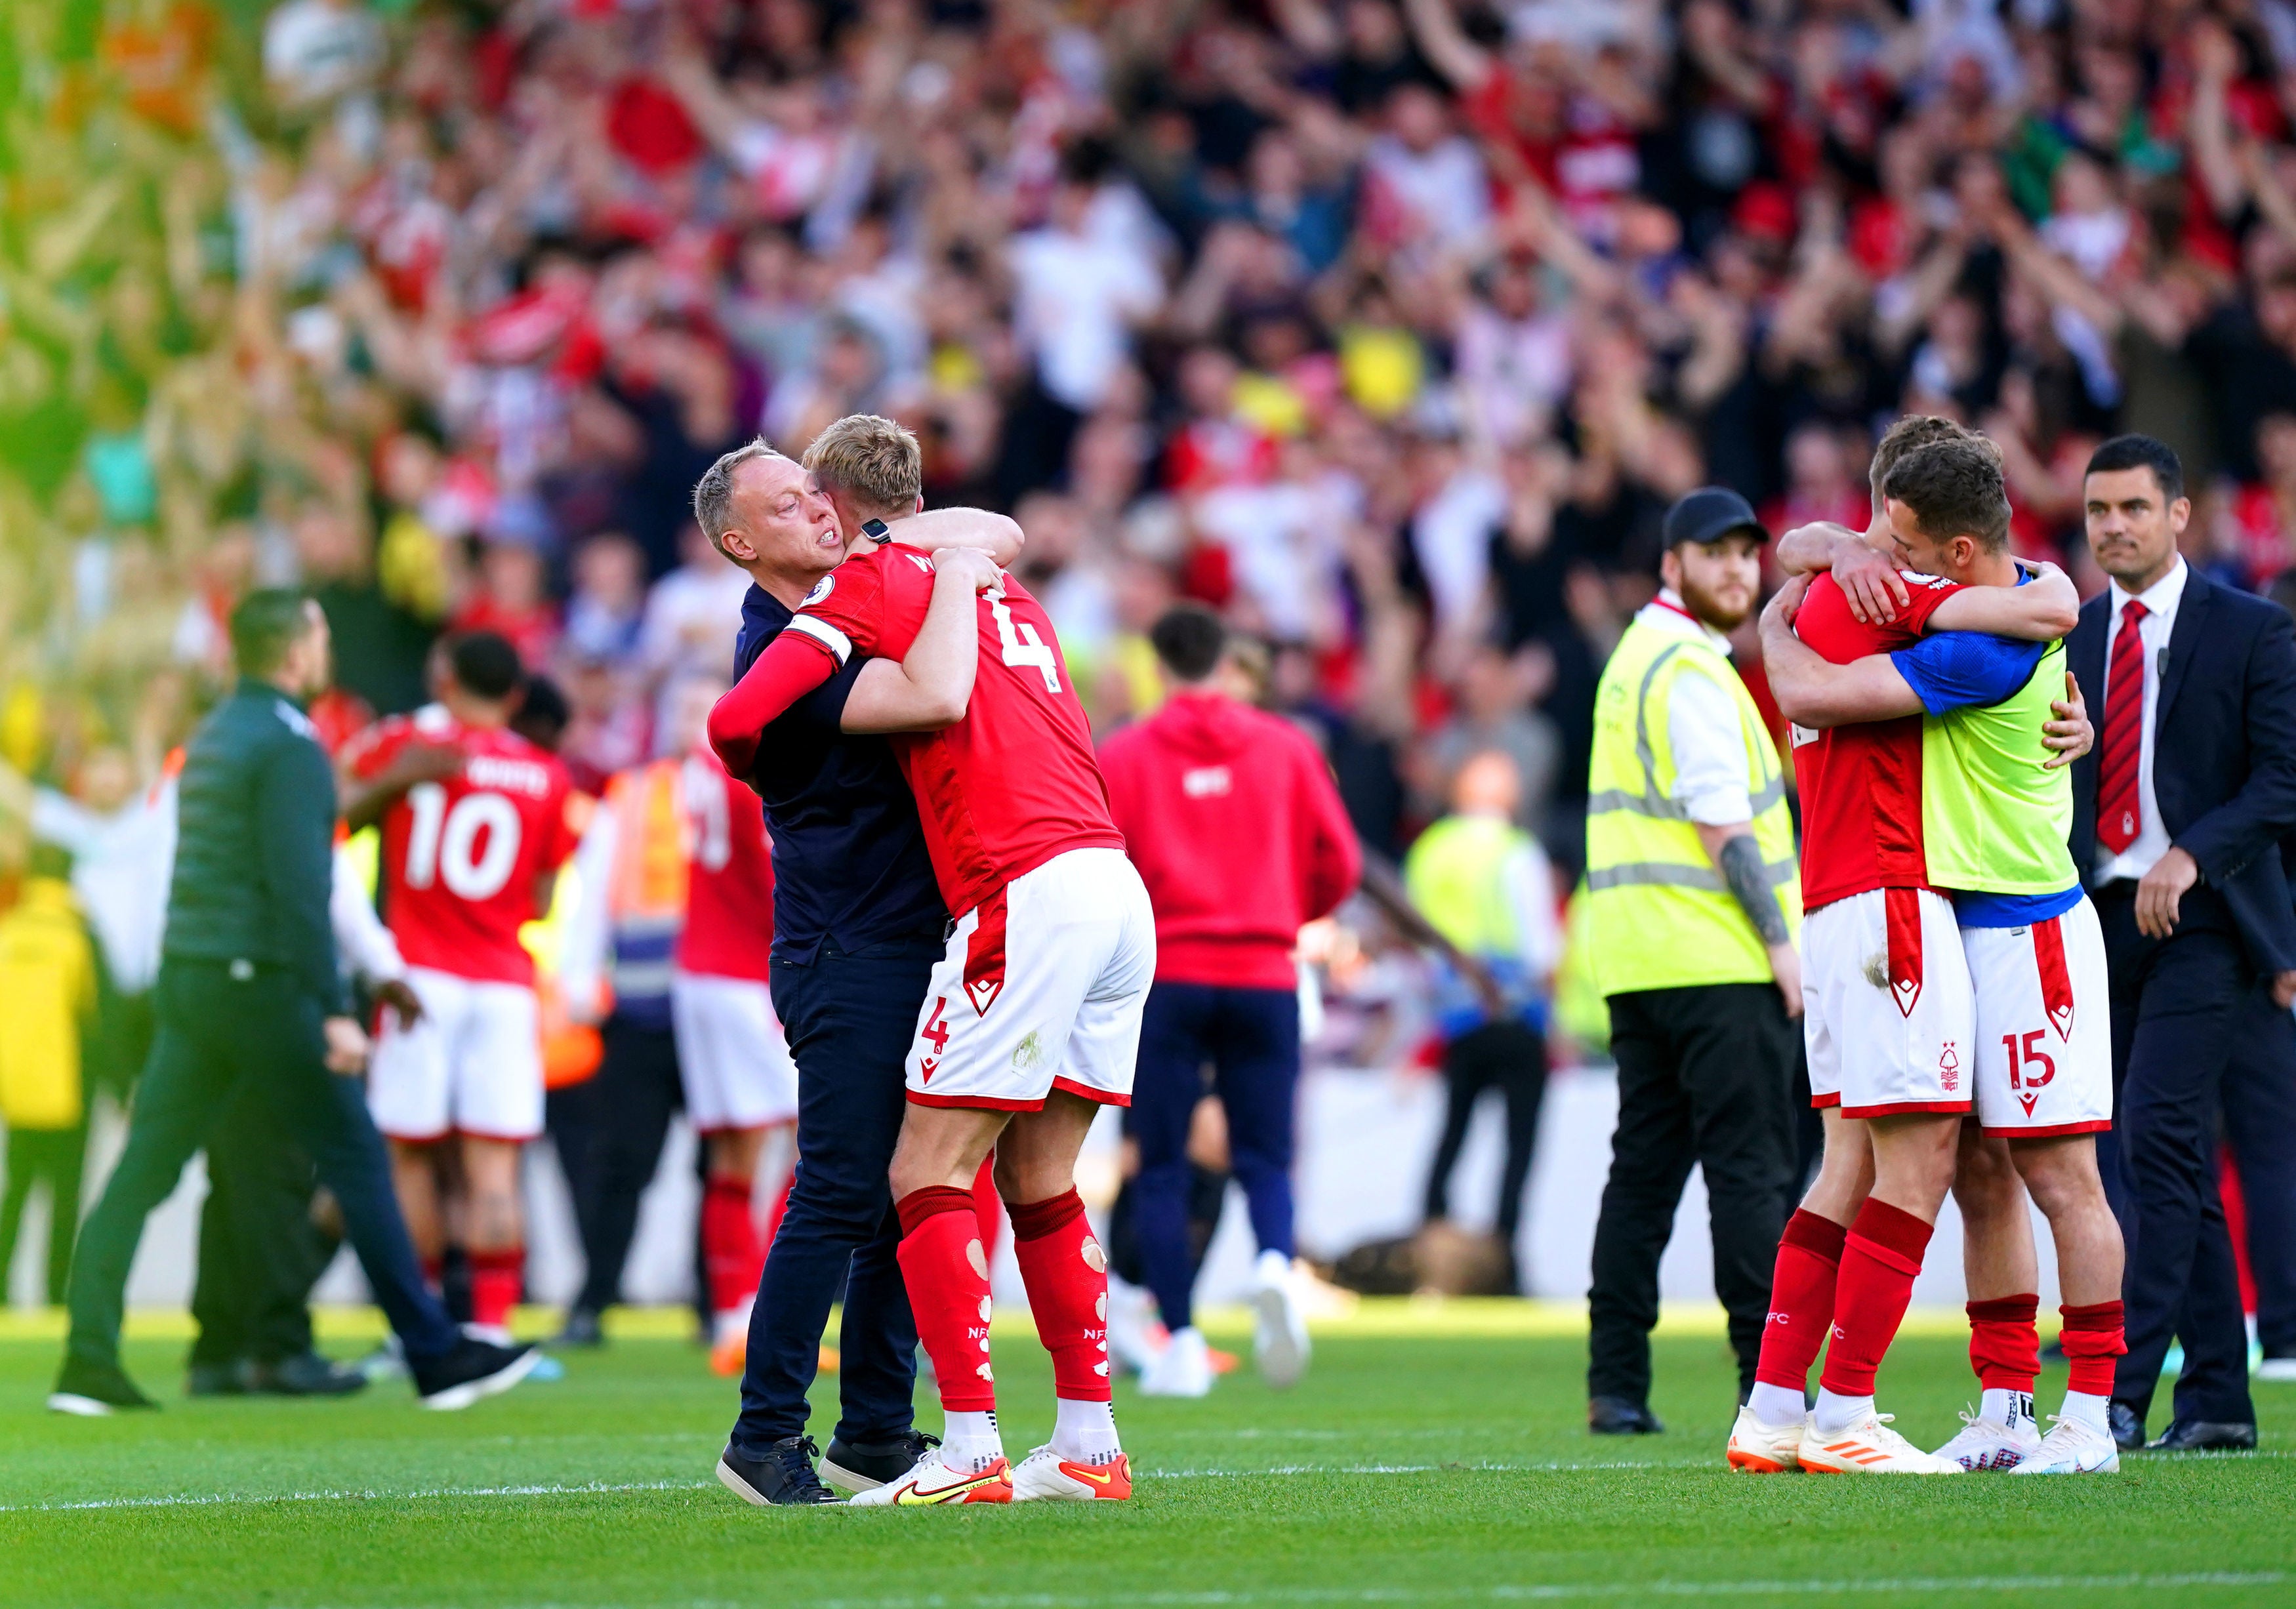 Nottingham Forest manager Steve Cooper hugs defender Joe Worrall